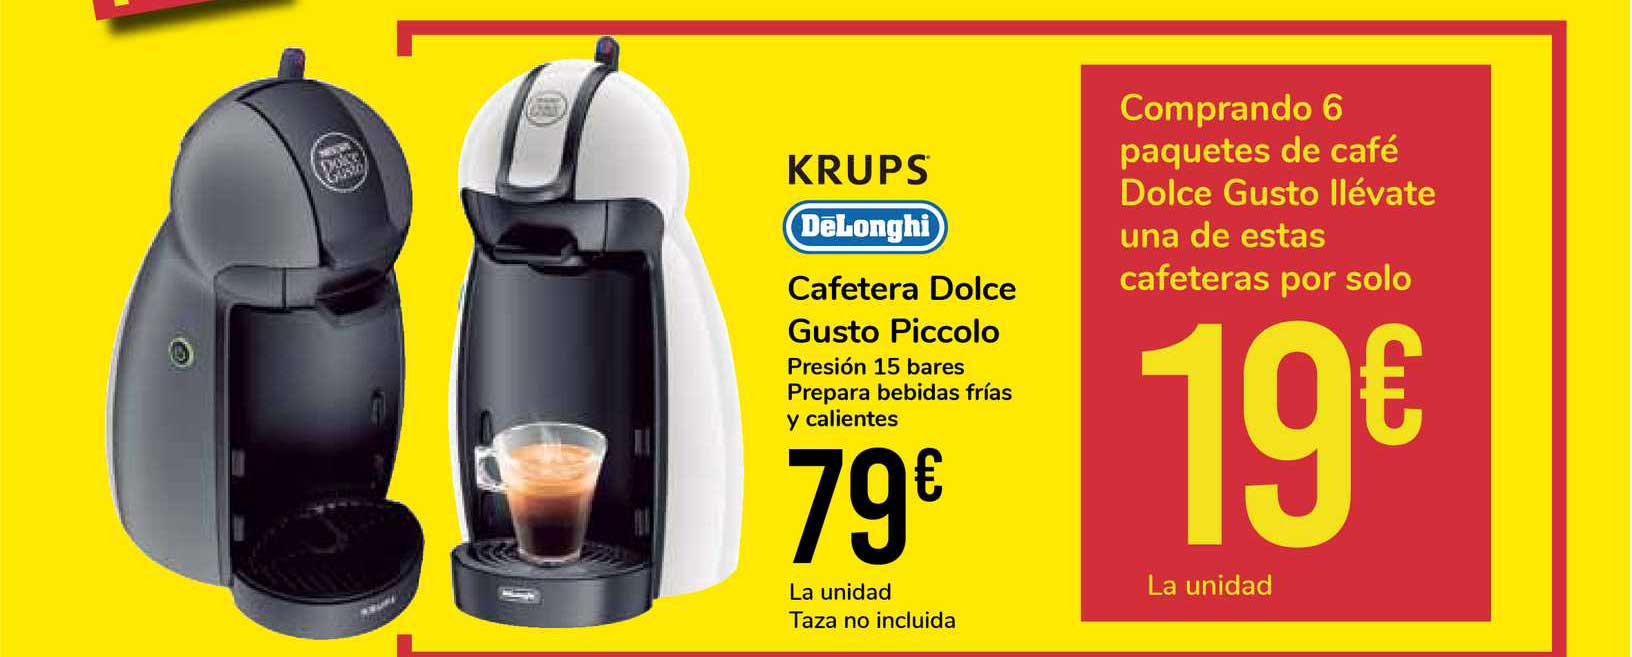 Carrefour - Oferta exclusiva en nuestro supermercado online: Llévate esta cafetera  Dolce Gusto Piccolo Krups por 49 euros comprando 2 packs de cápsulas  Nescafe Dolce Gusto. Oferta válida hasta el 11/05/2015.